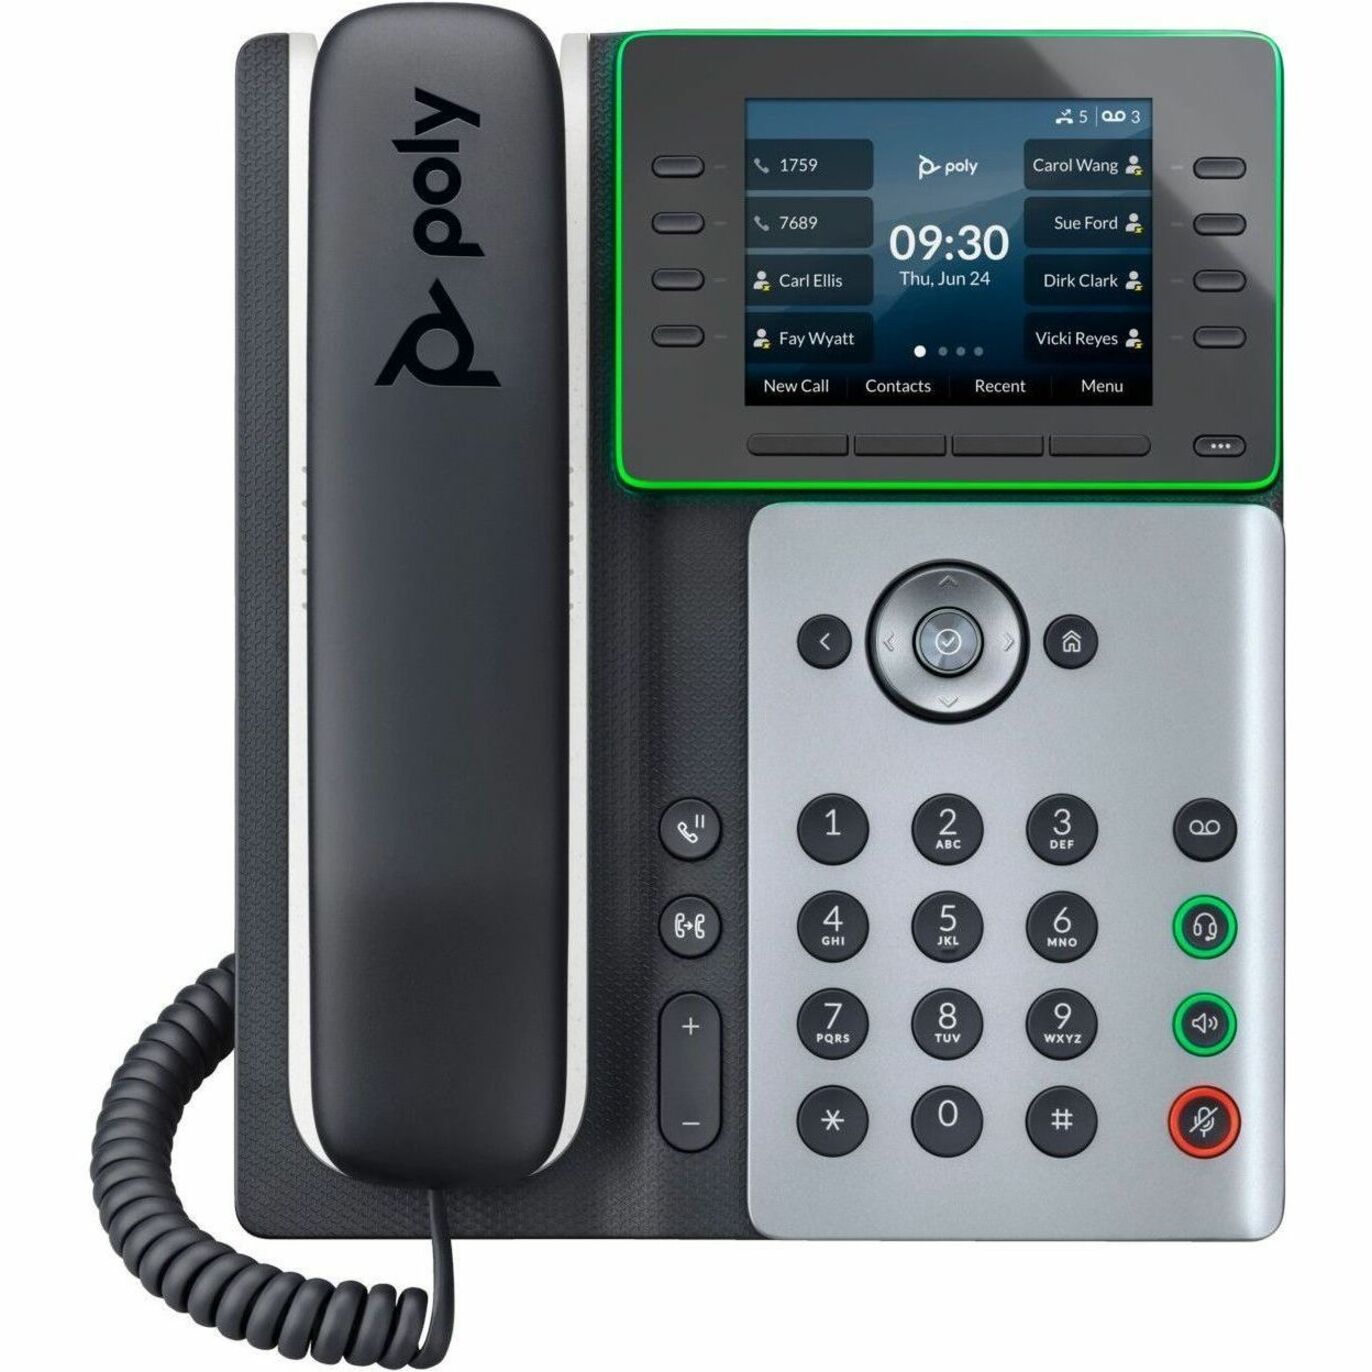 ポリ エッジ E300 IP 電話と PoE 対応 電源アダプタ、コード式デスクトップ ブラック、TAA 準拠  ブランド名: ポリエッジ